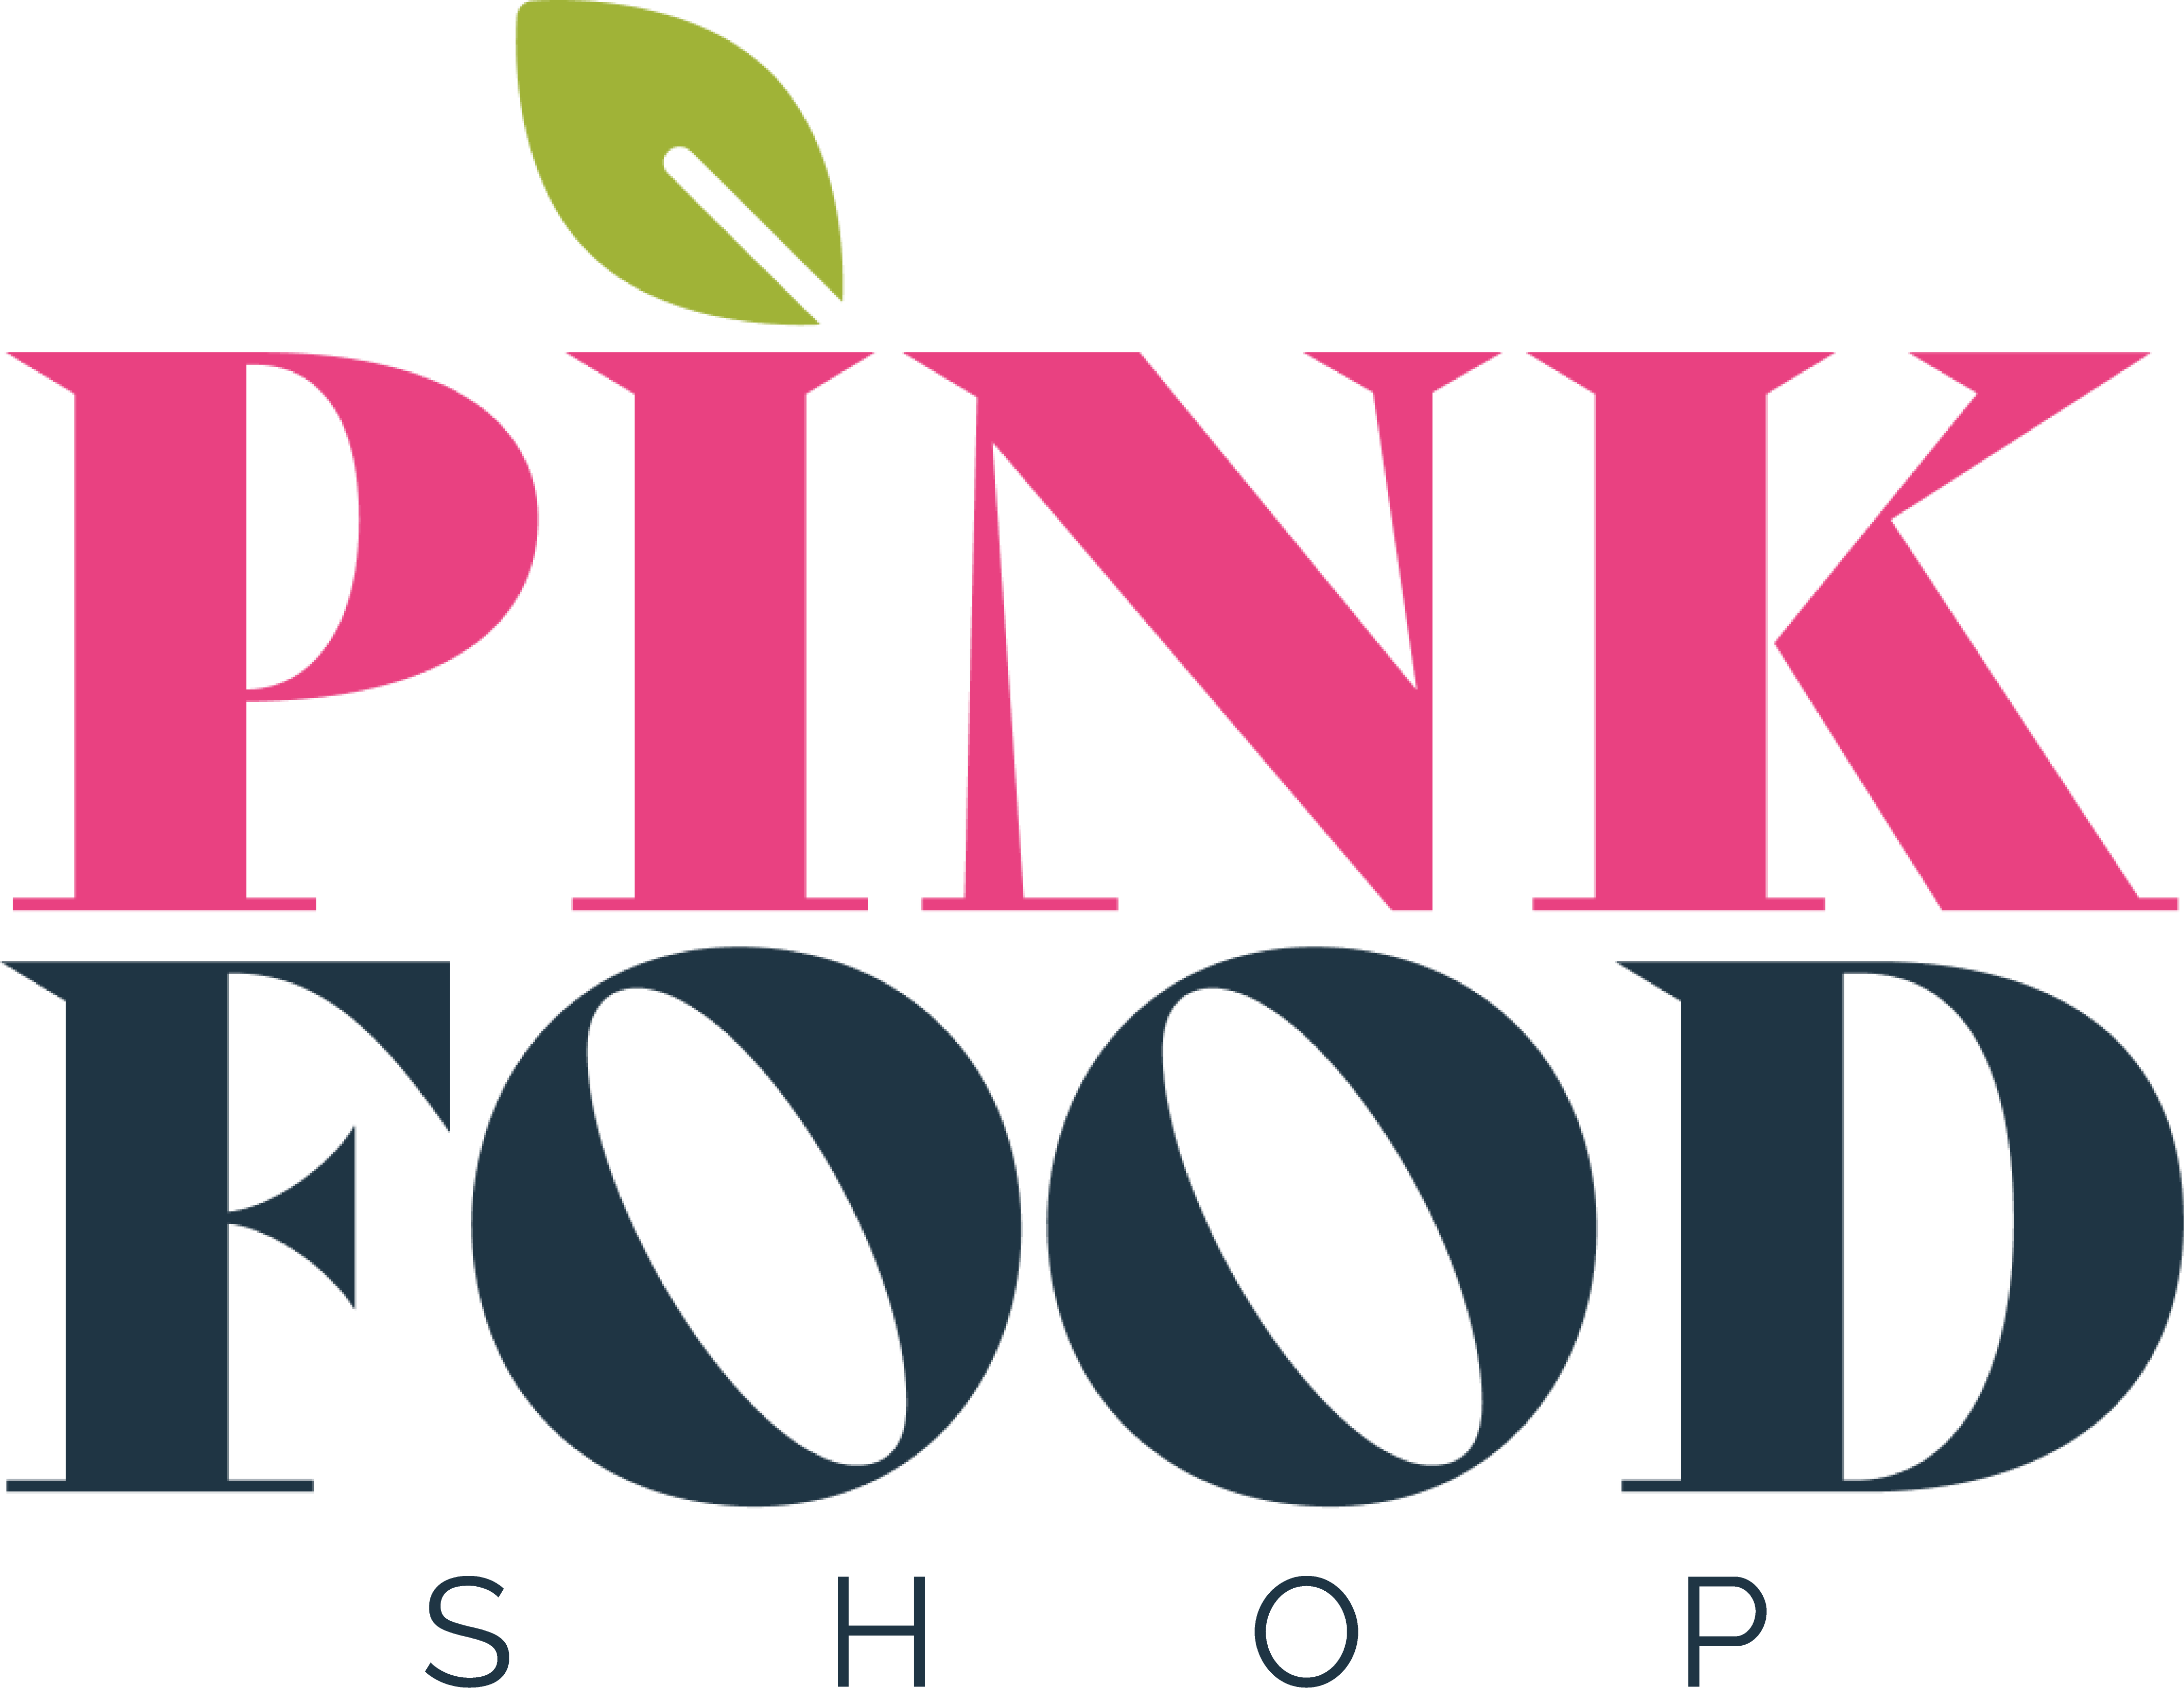 Pinkfoodshop